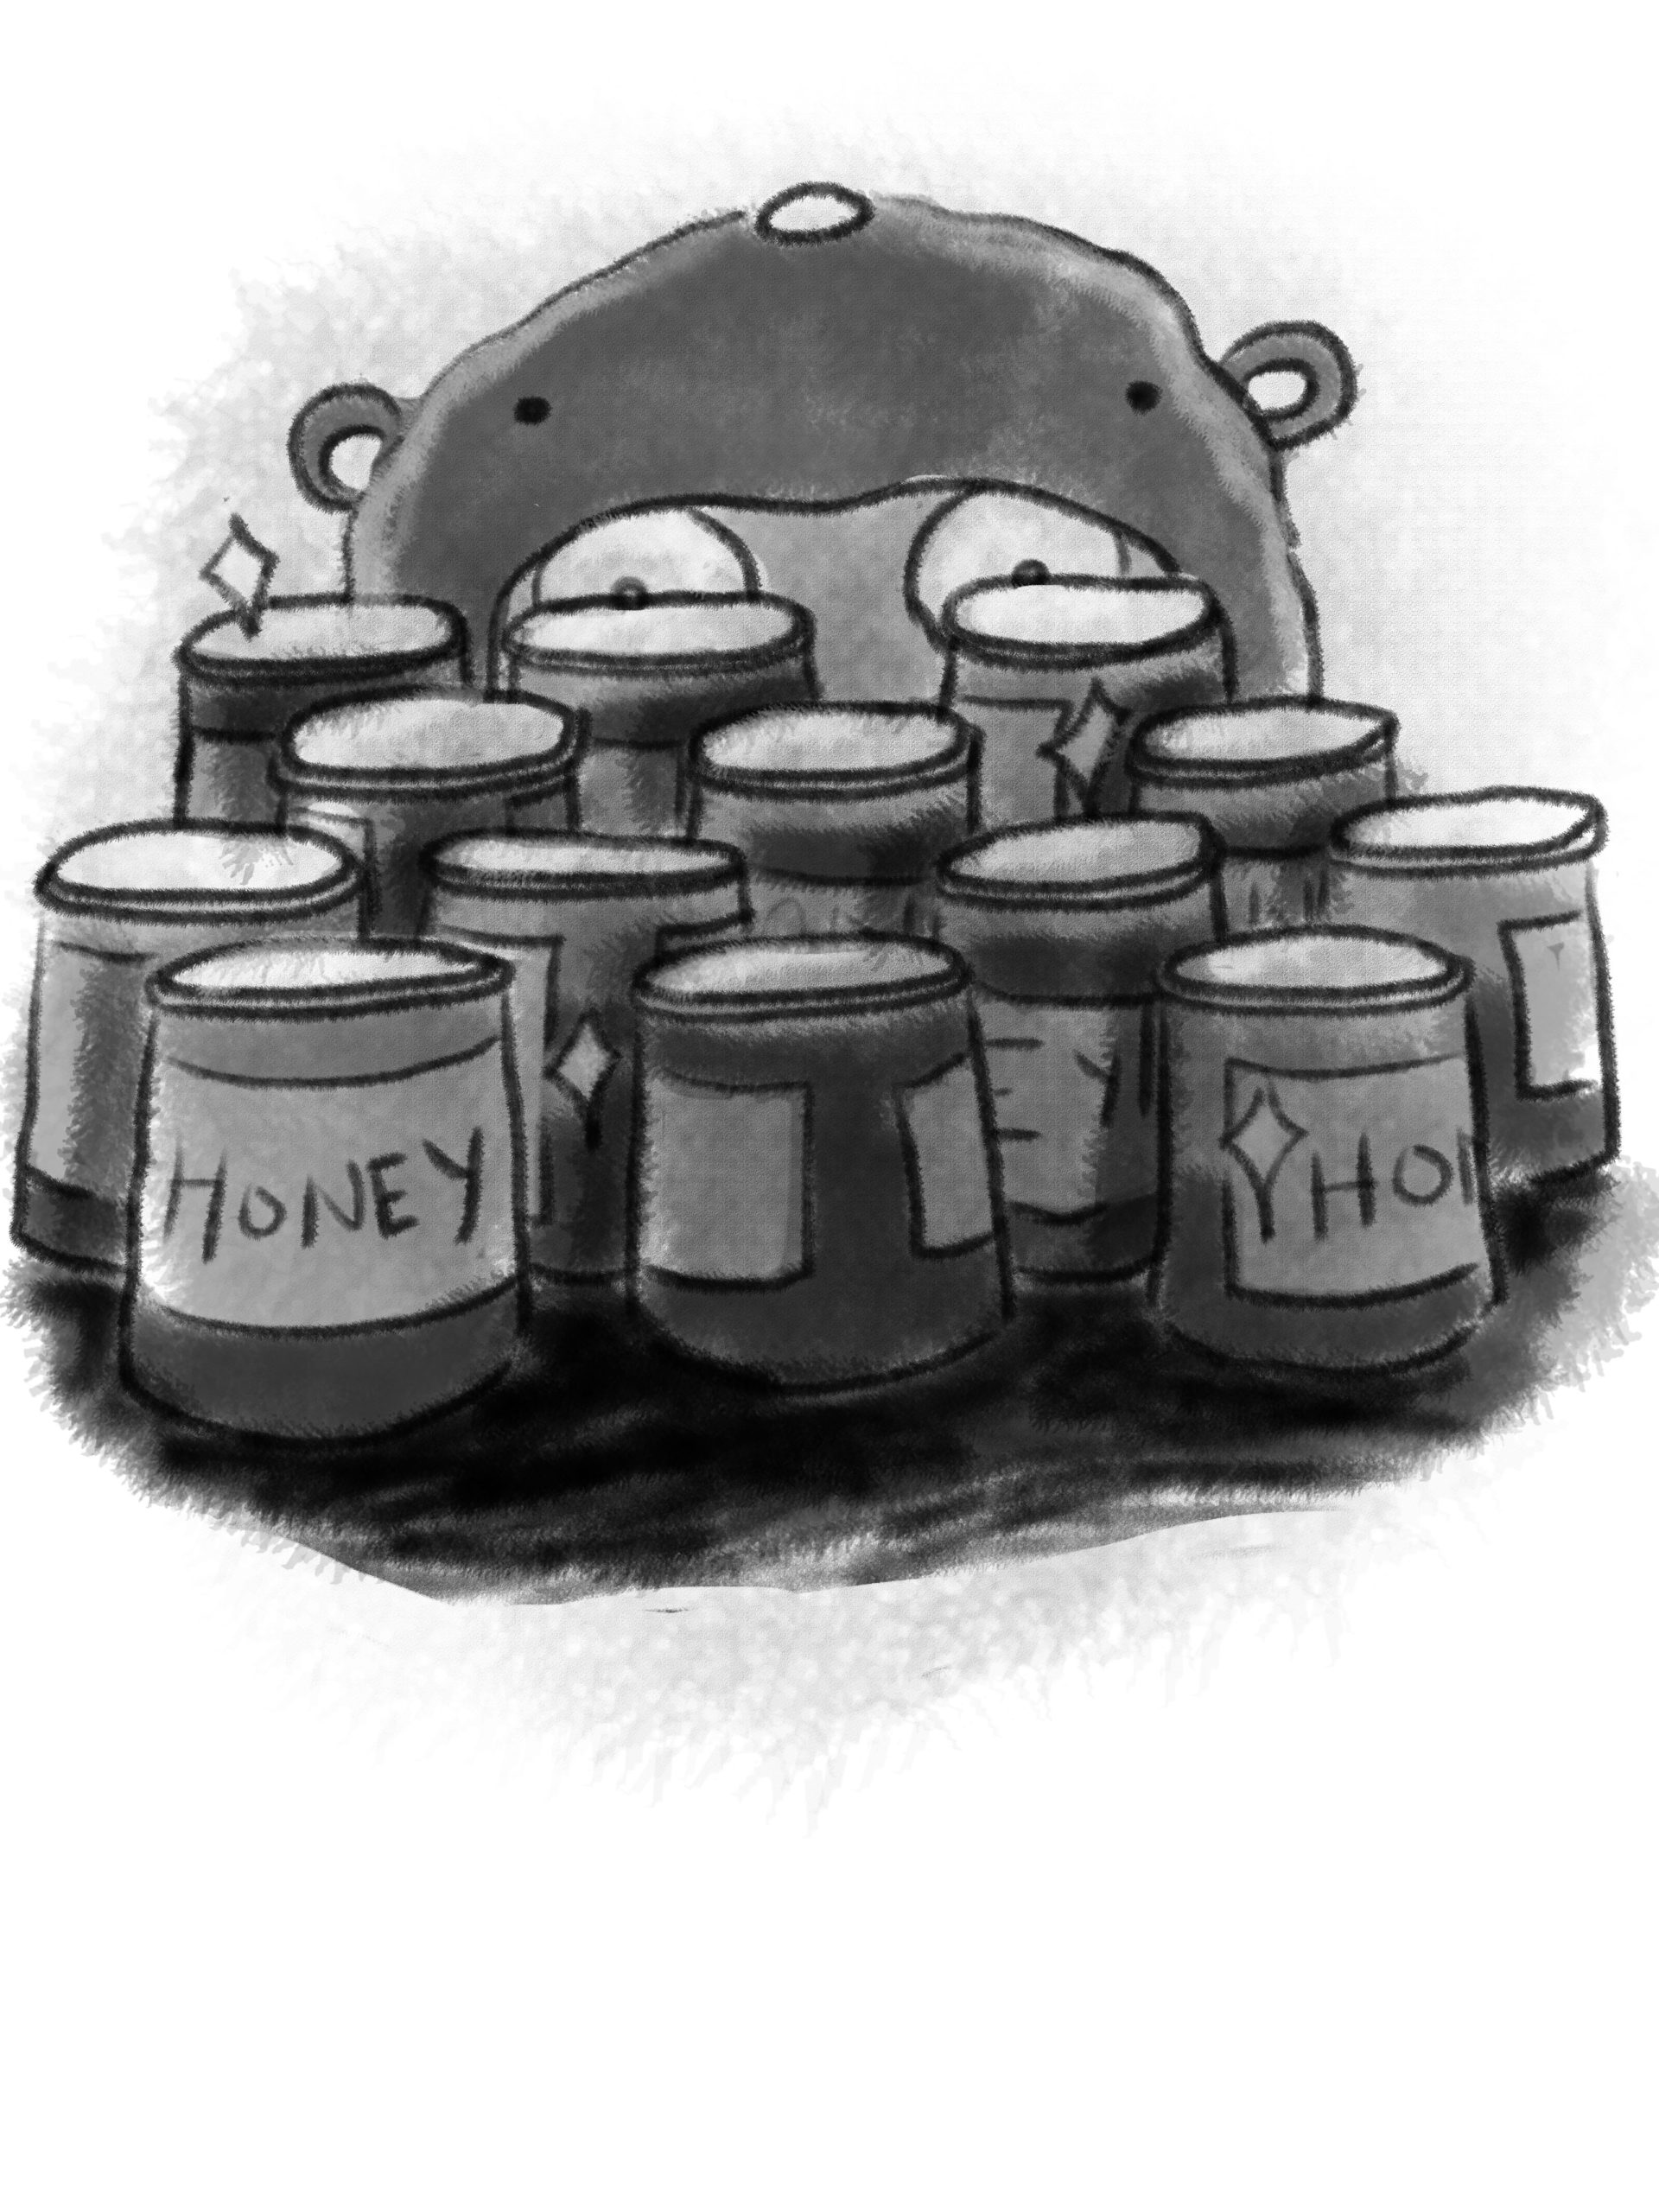 Moldylocks staring at jars of honey.